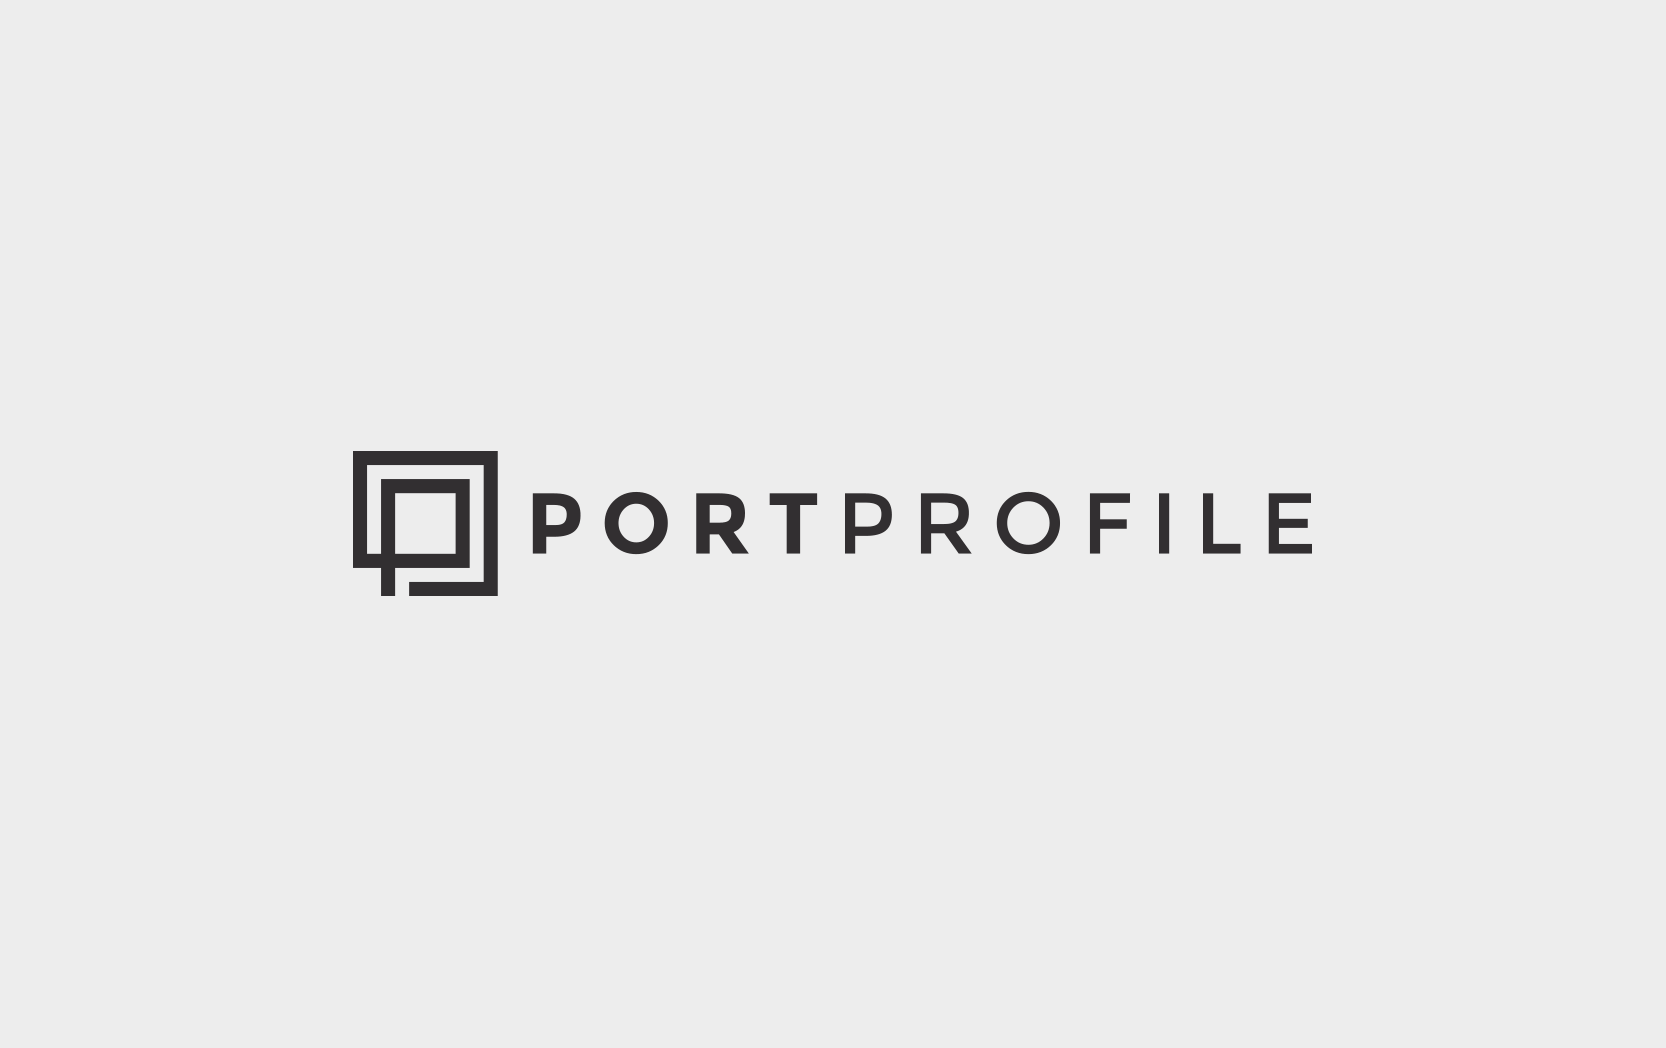 Port Profile